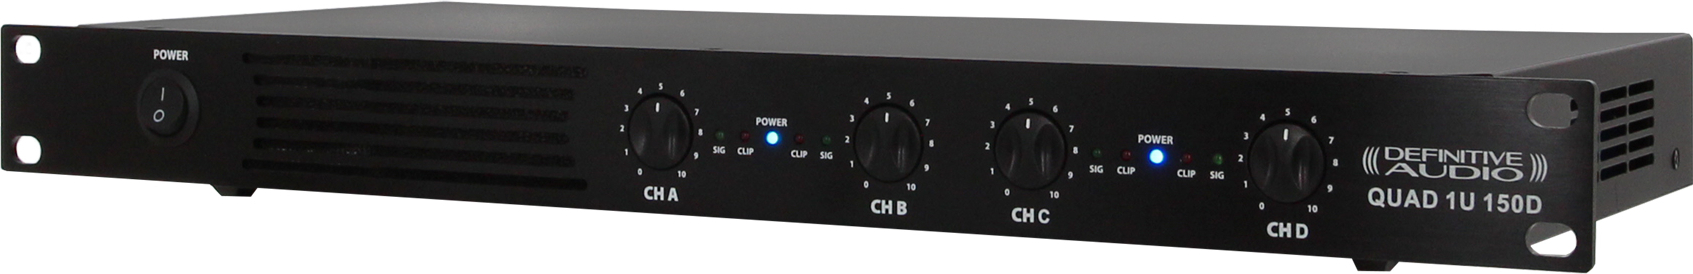 Definitive Audio Quad 1u 150d - Etapa final de potencia de varios canales - Main picture